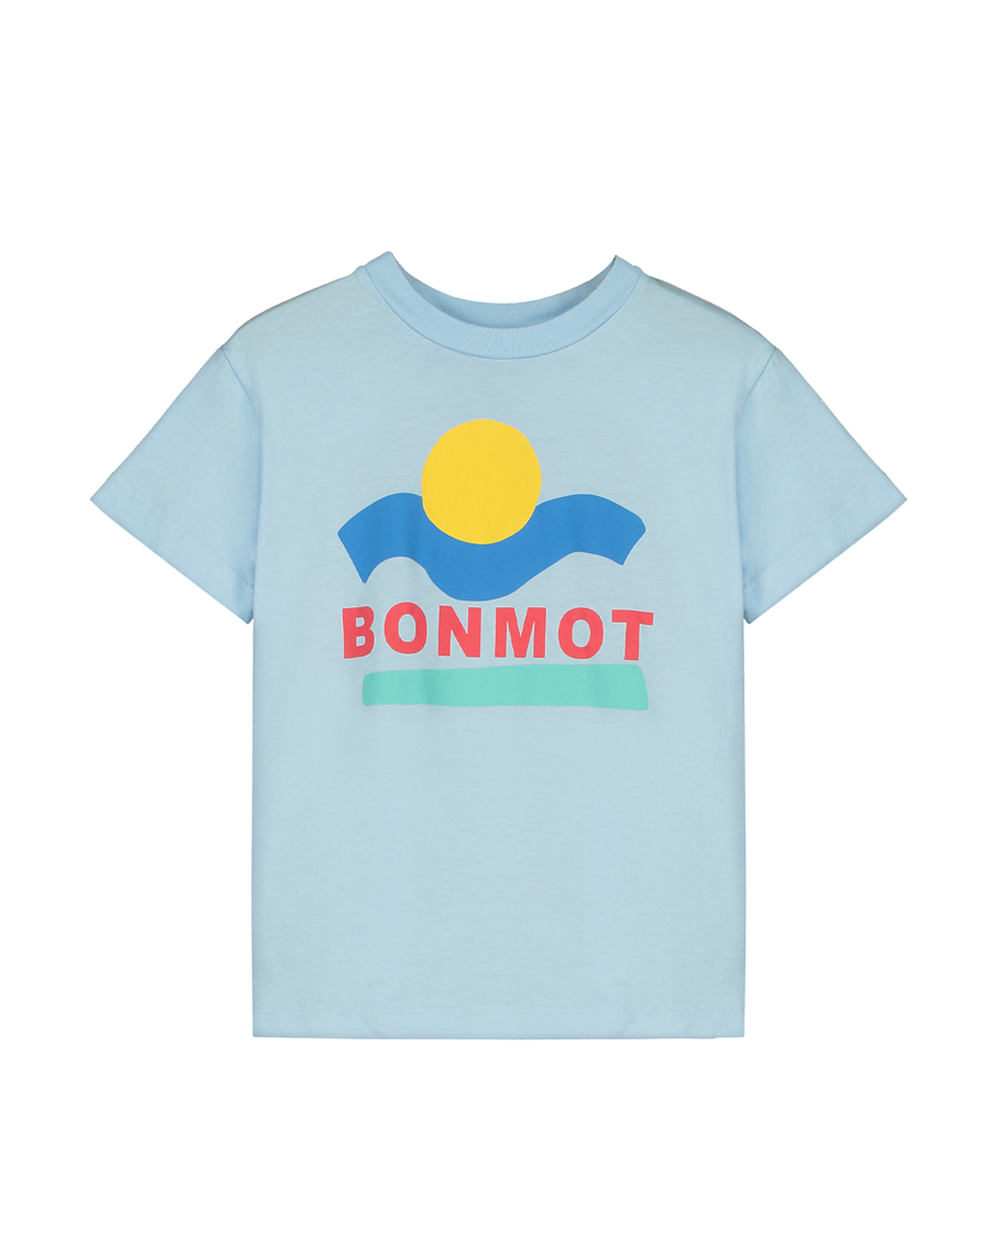 [ BONMOT ] T-shirt bonmot sunset